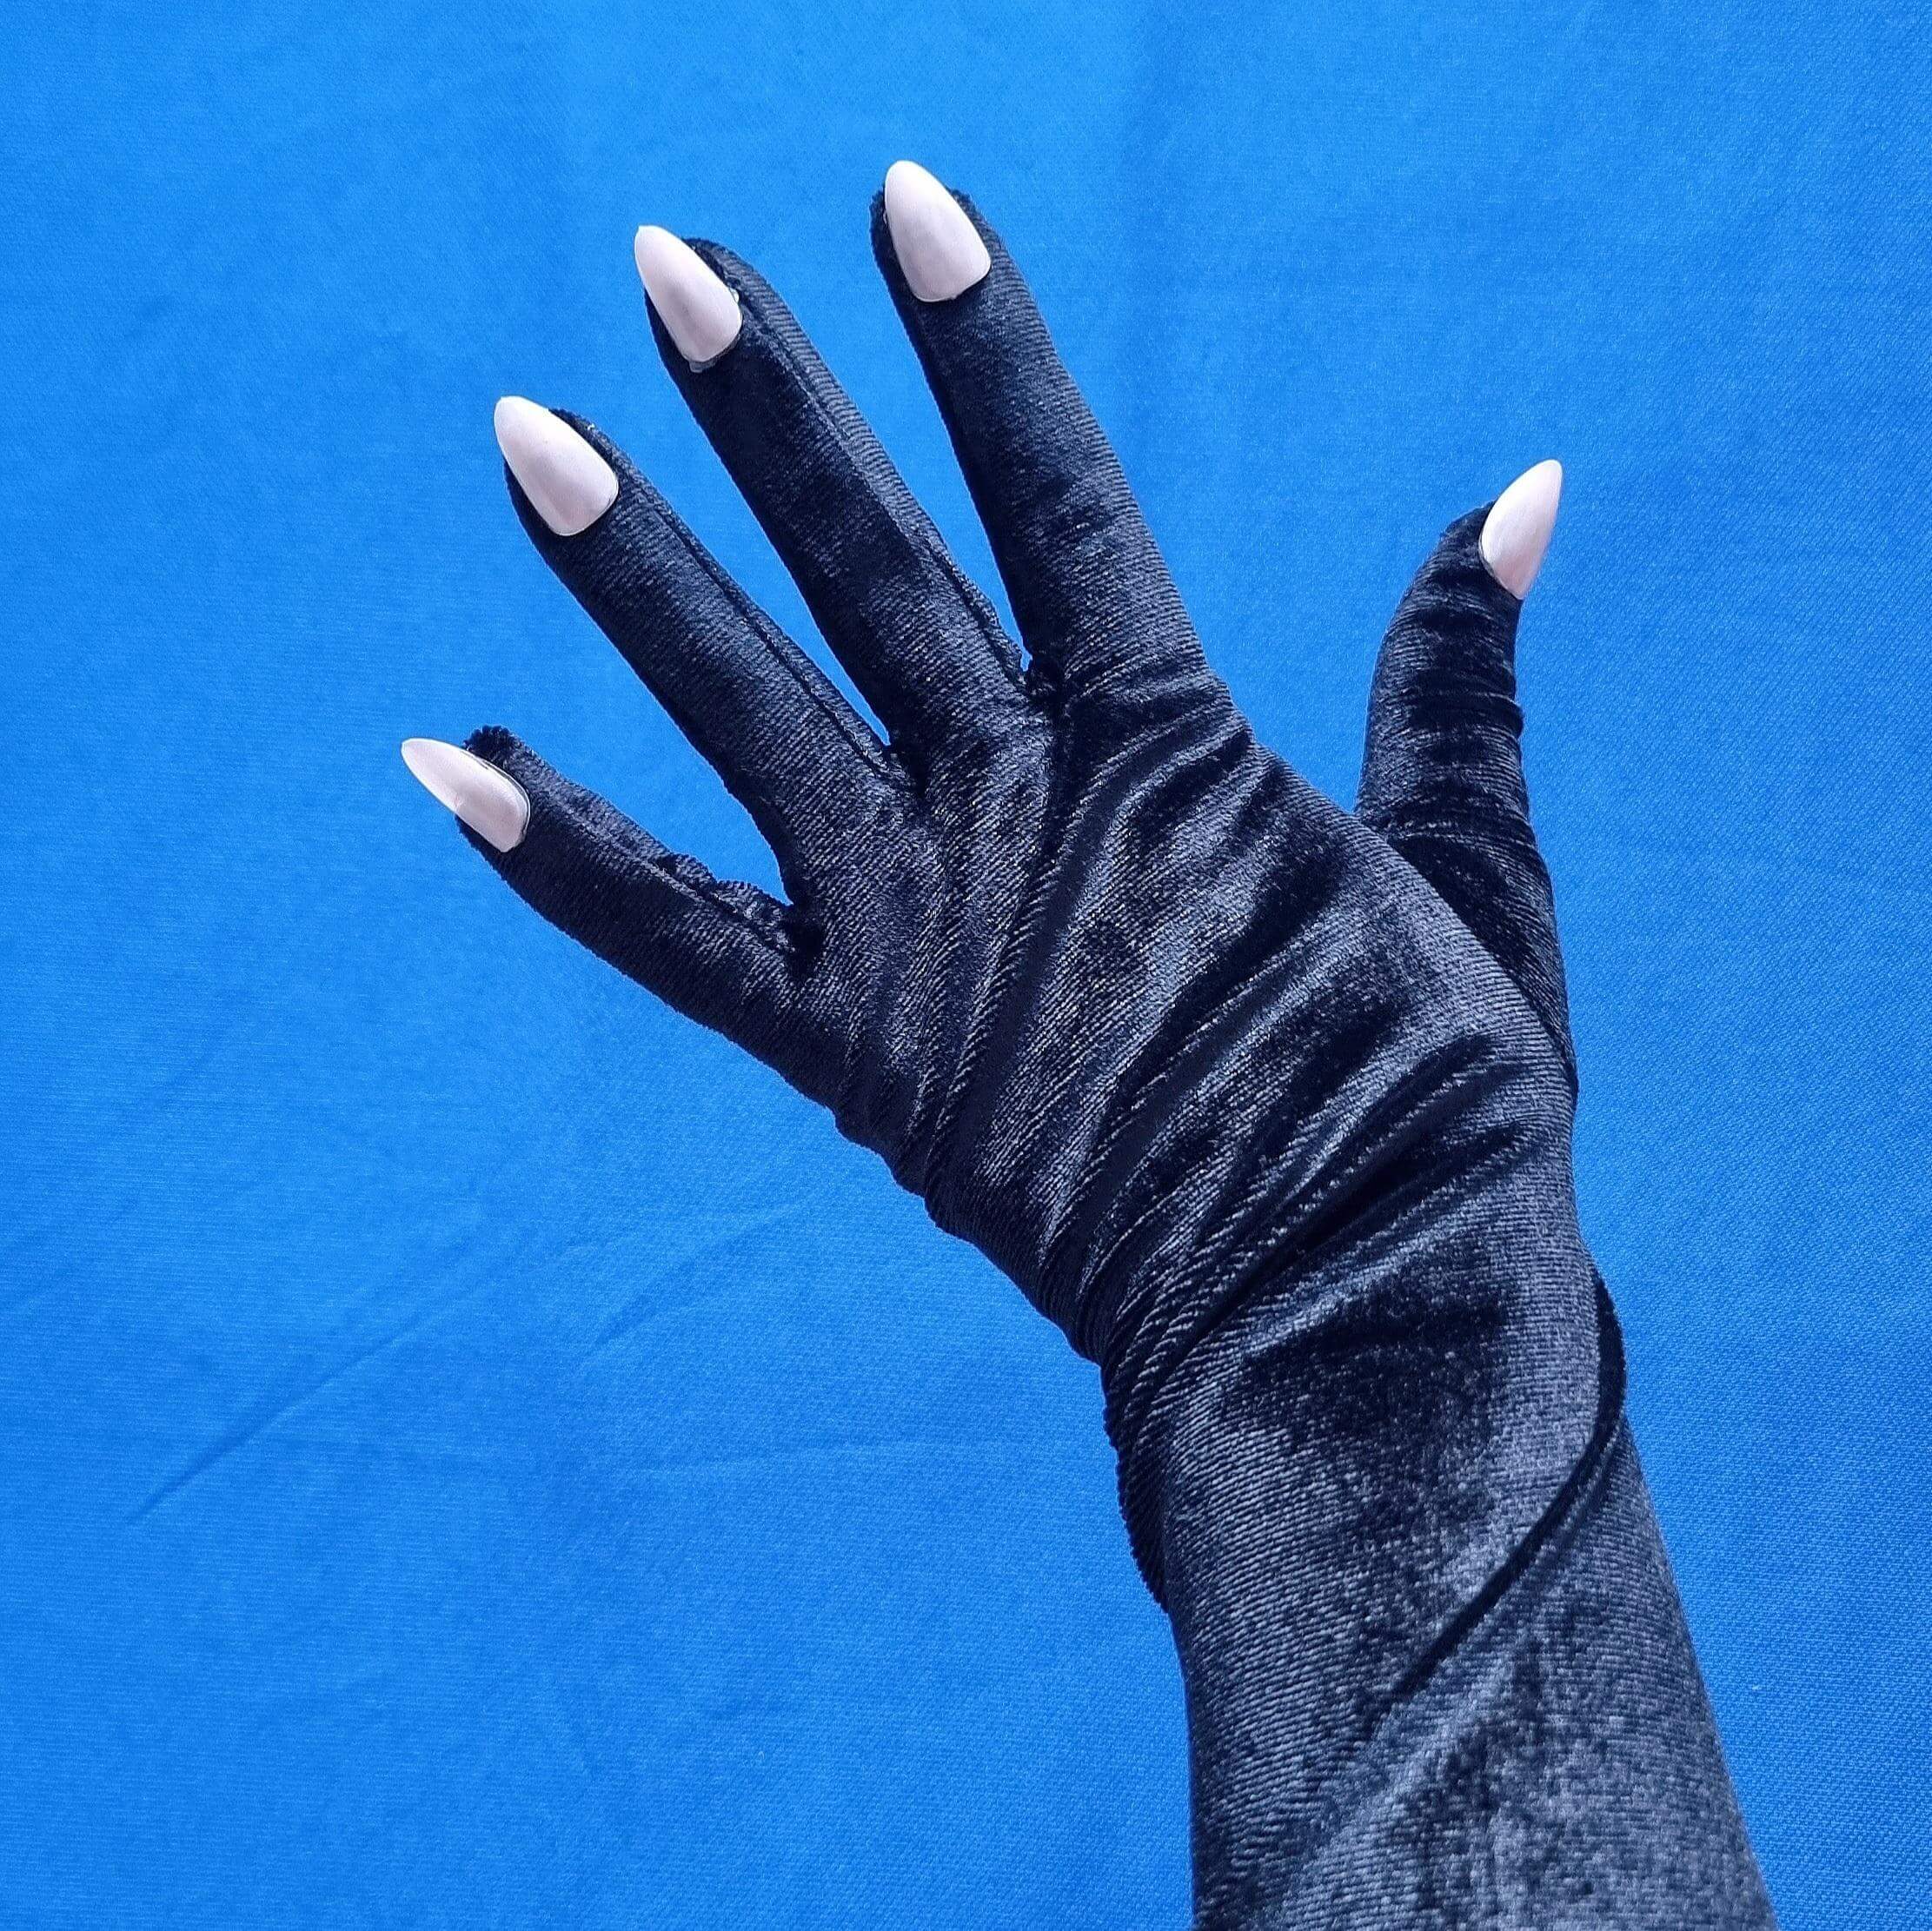 Surreal fashion DIY / Surreal gloves / final result / (c) Ivana Novoselac